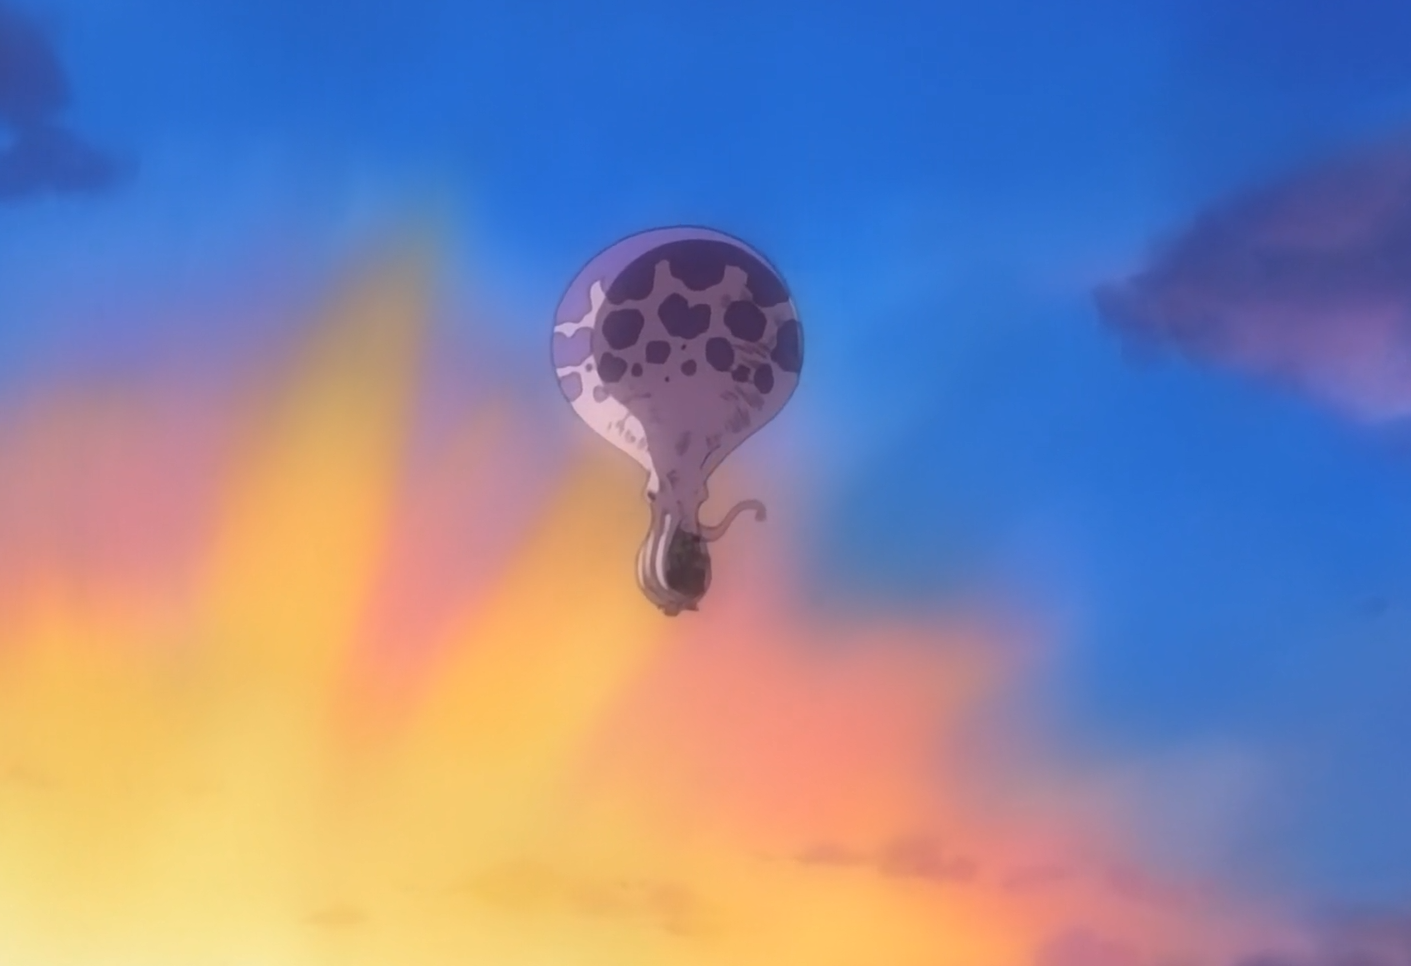 One Piece G-8 The Going Merry Flies Away Octopus Balloon